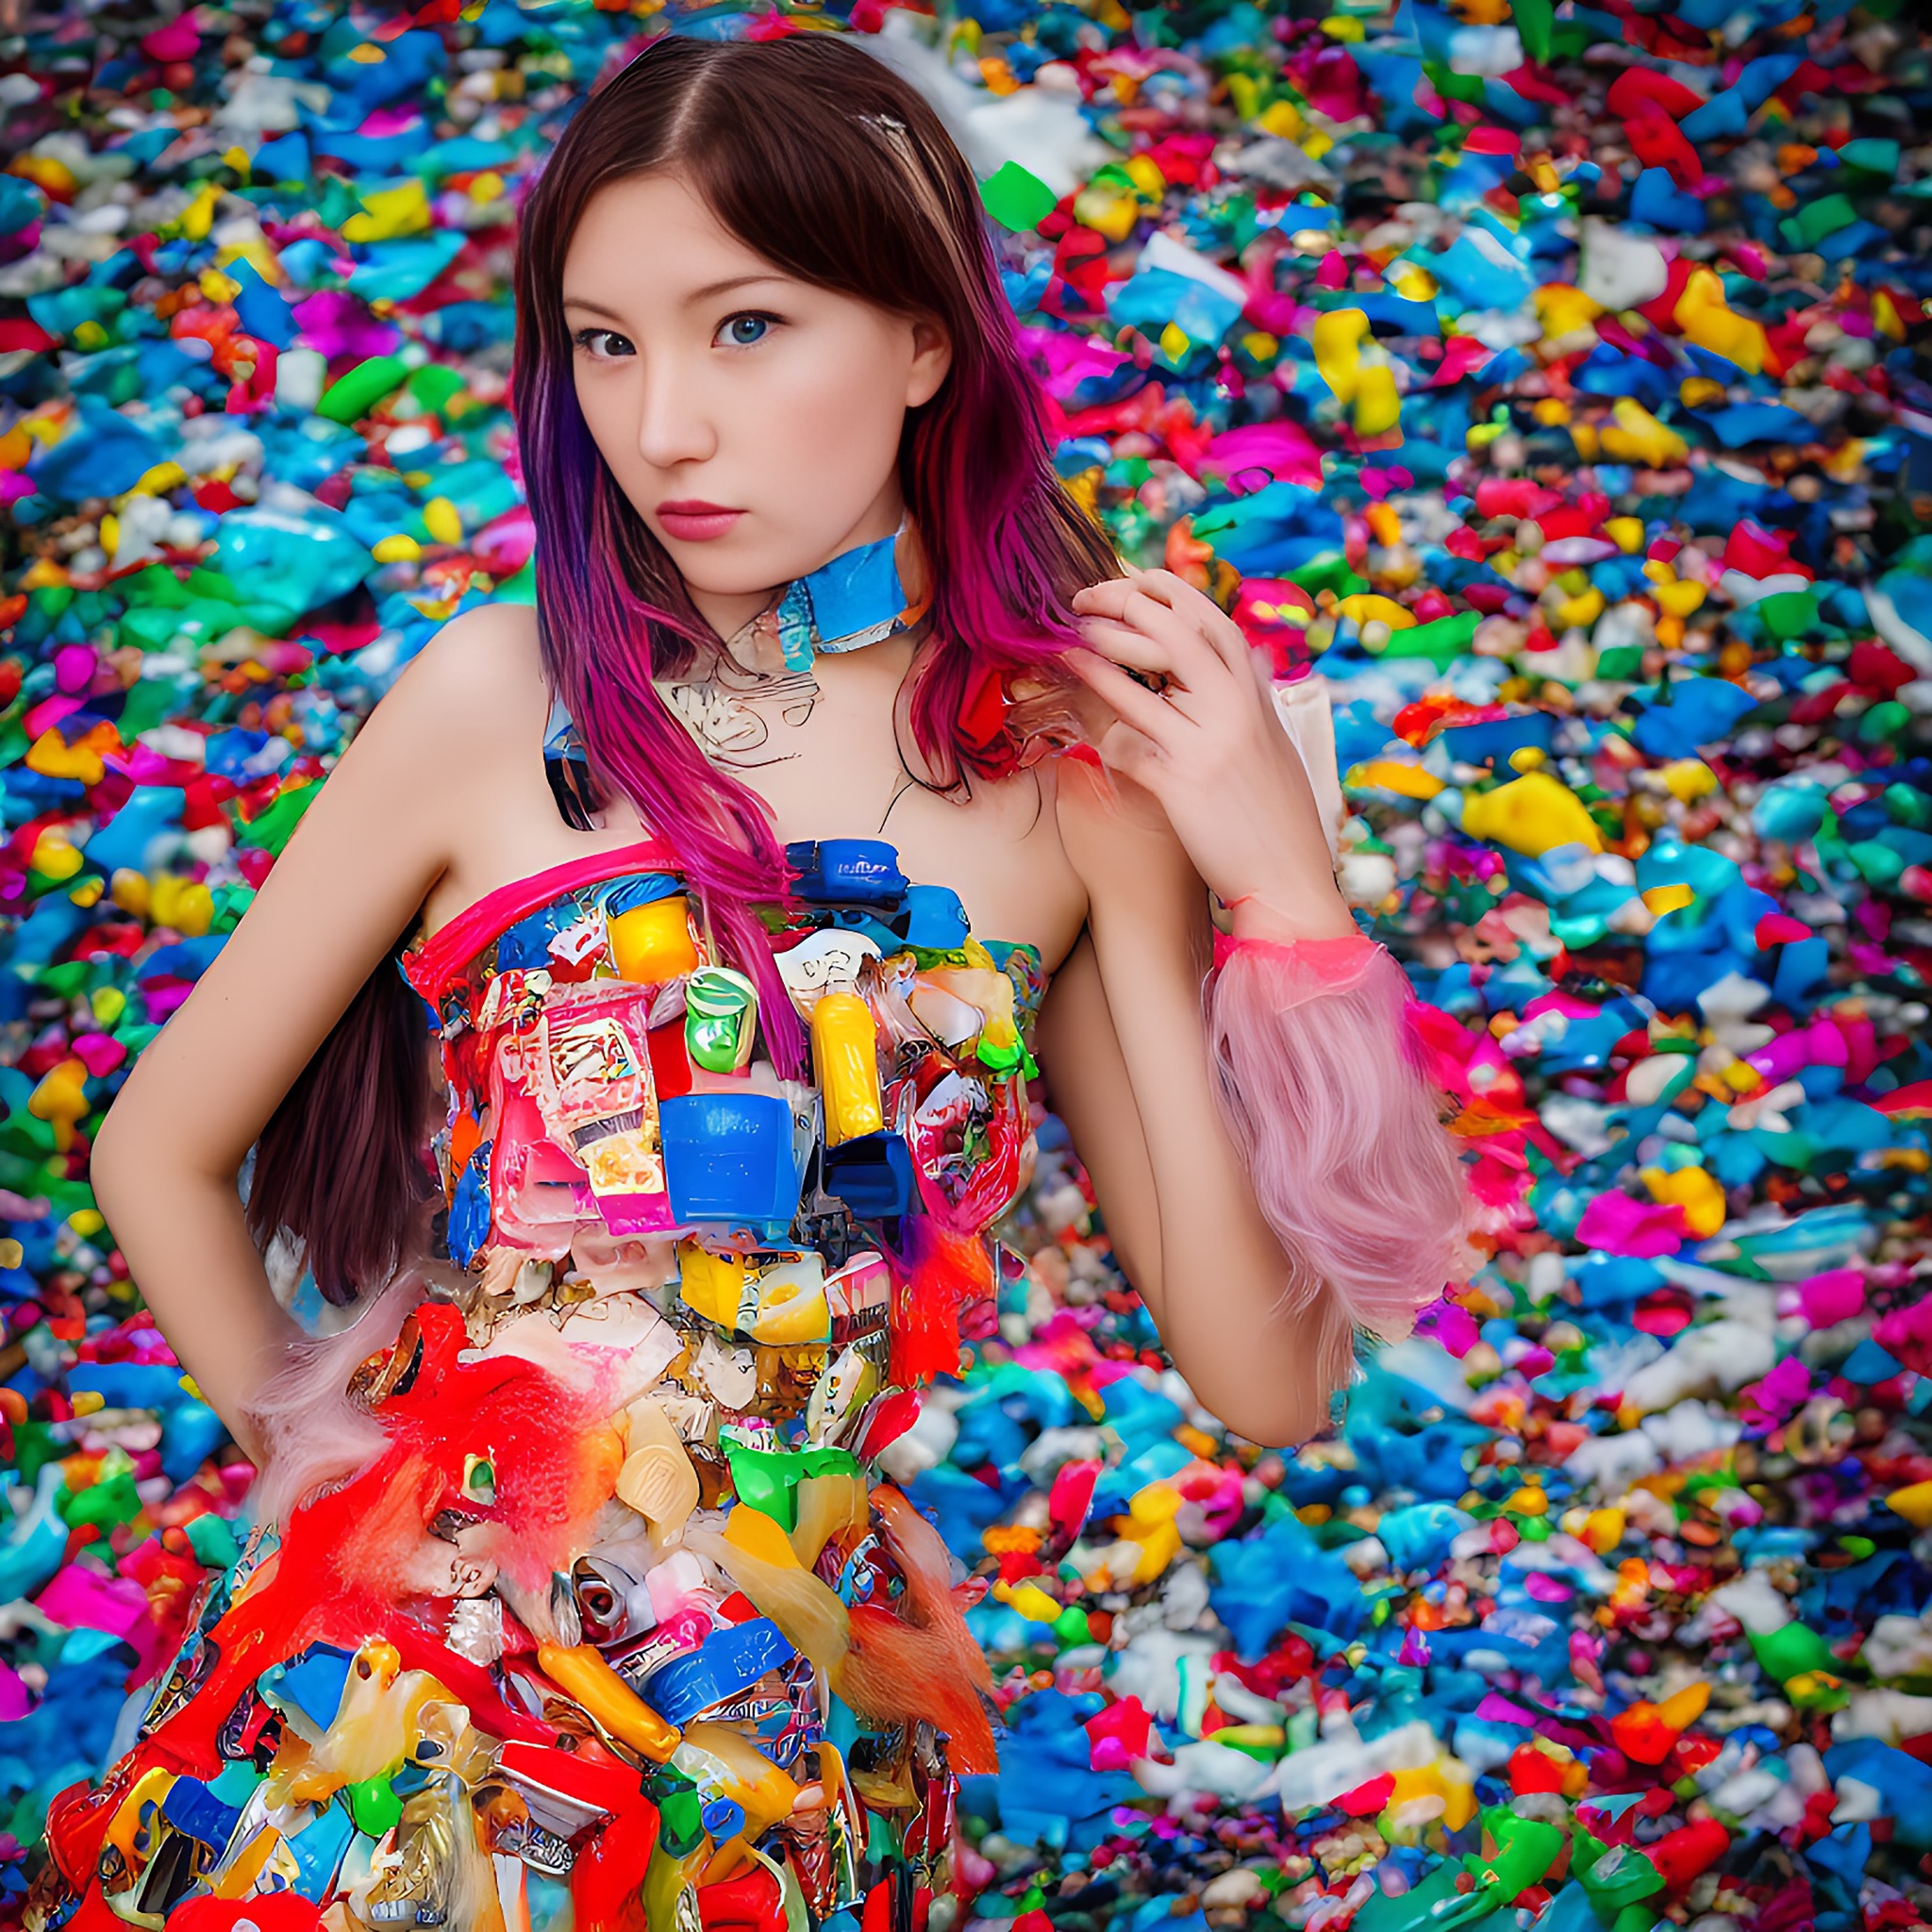 model-plastic-trash-dress-colorful-portrait